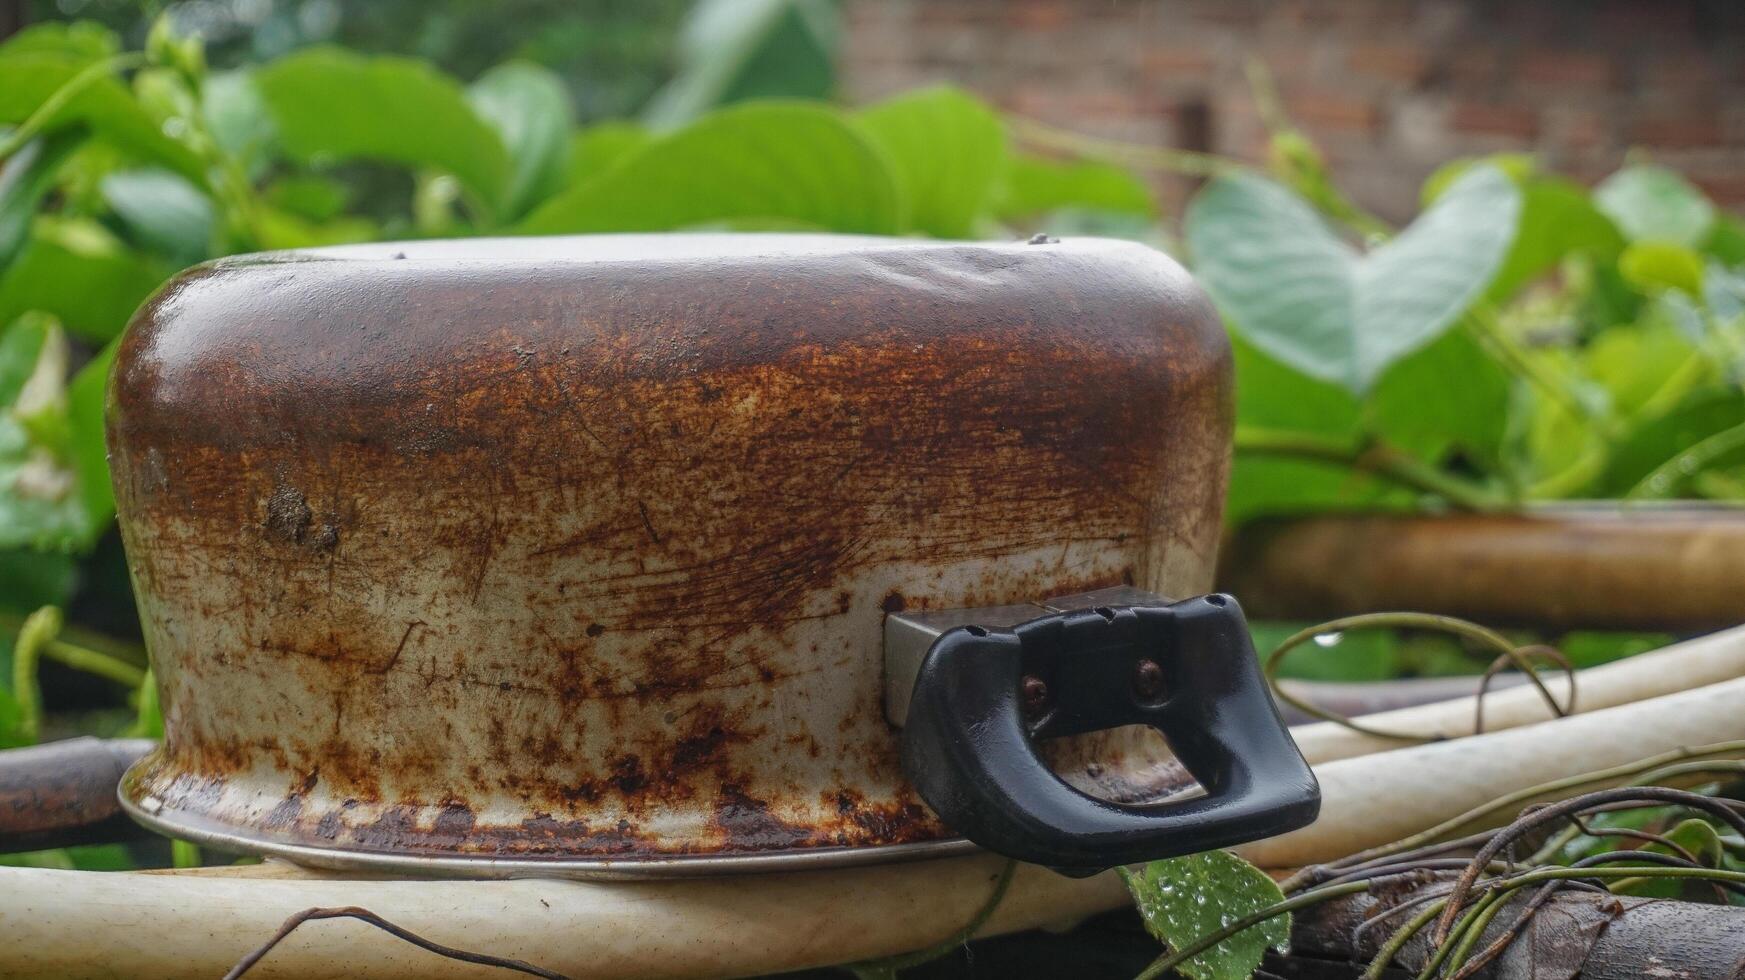 Uniquely, a rusty soup pot sits on a leaf plant photo